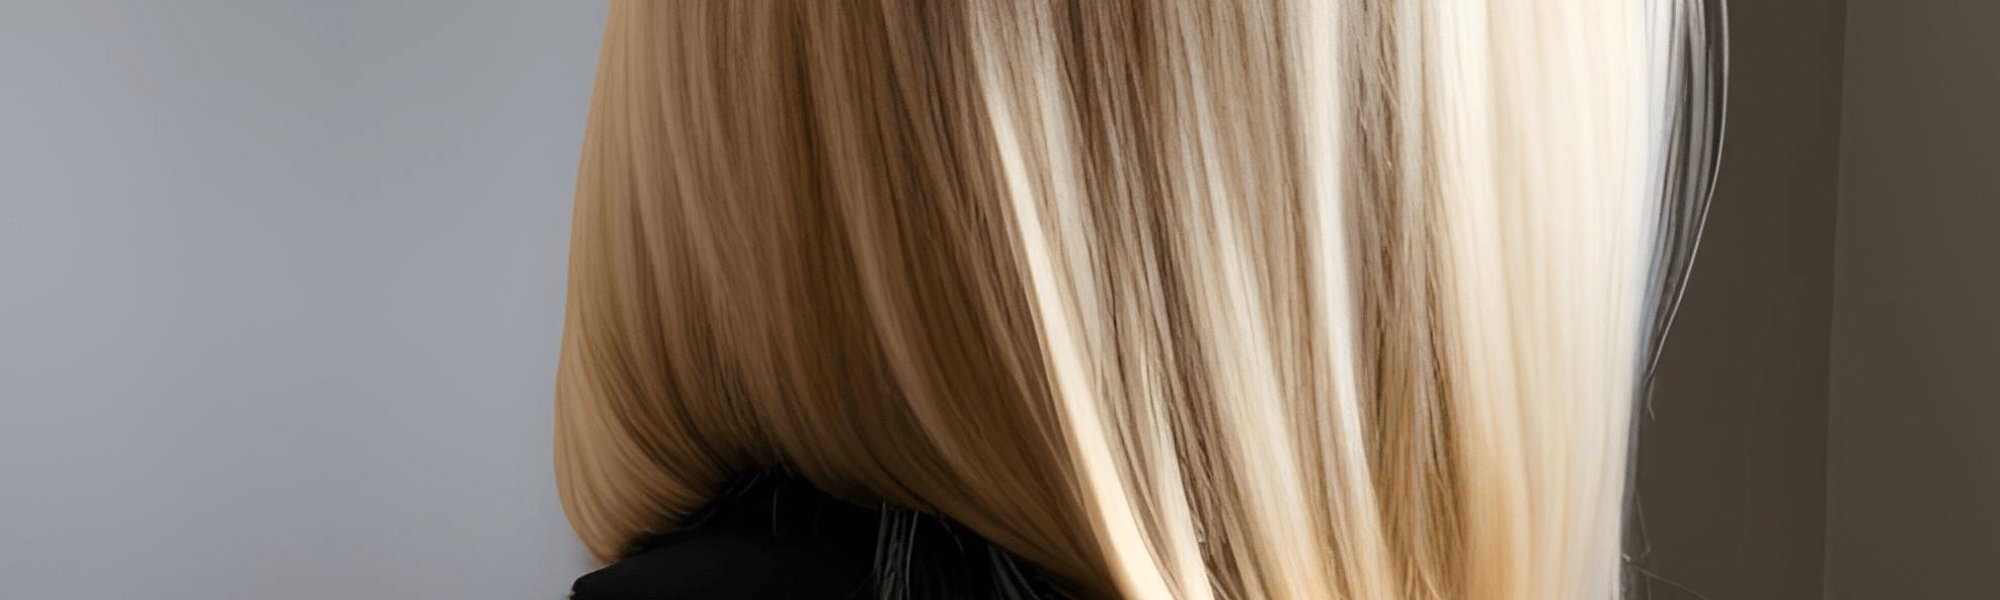 Langes blond gefärbtes Haar einer Frau - Detailansicht